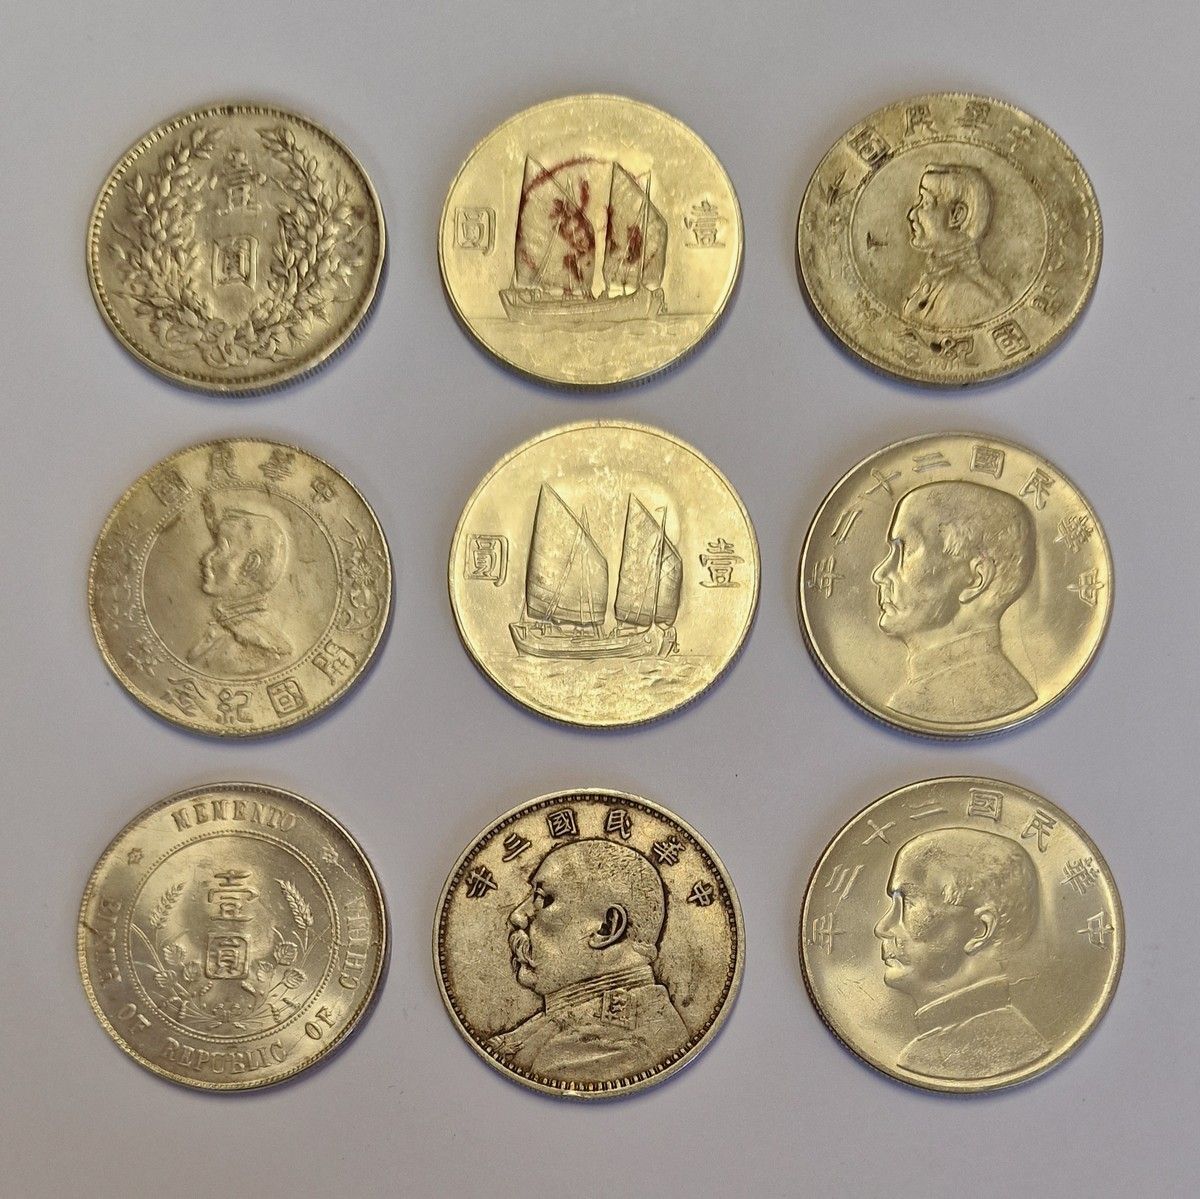 中国- 9枚1美元银币- 3枚1美元银币纪念品--中华民国成立P. 80,5 g - 4